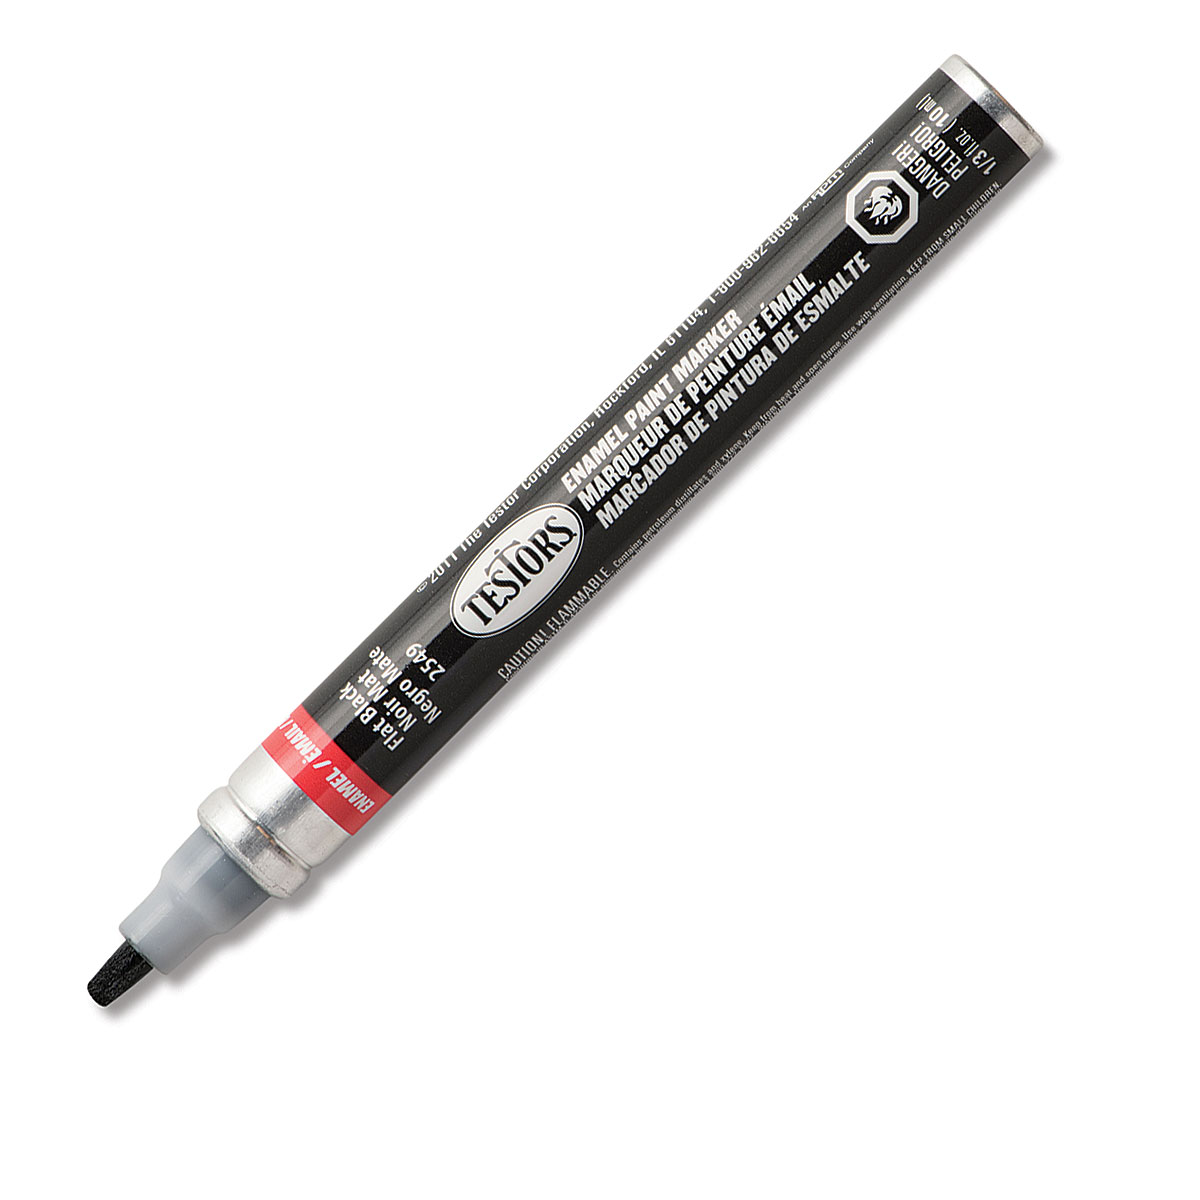 Buy Matte Black Paint Pen online